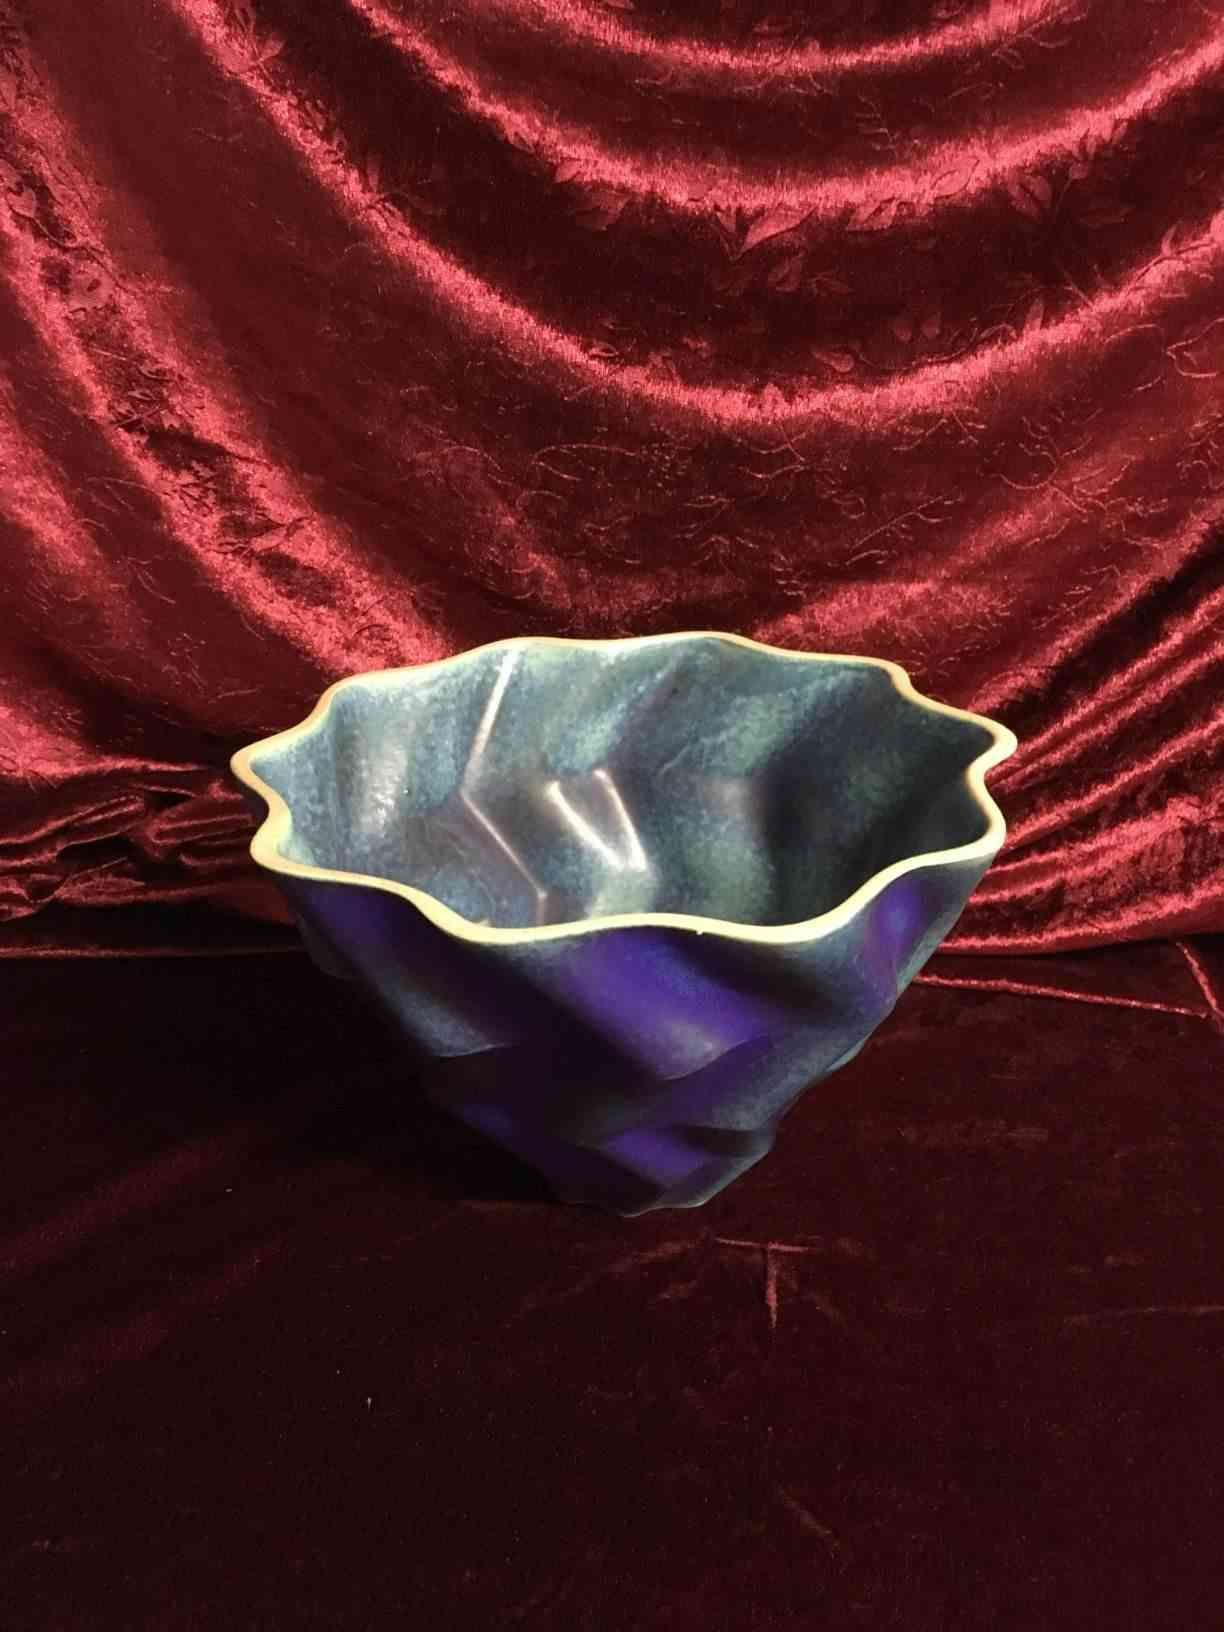 SOLGT Kähler porcelæn skål i blå og turkis nuancer. 1. sortering perfekt stand